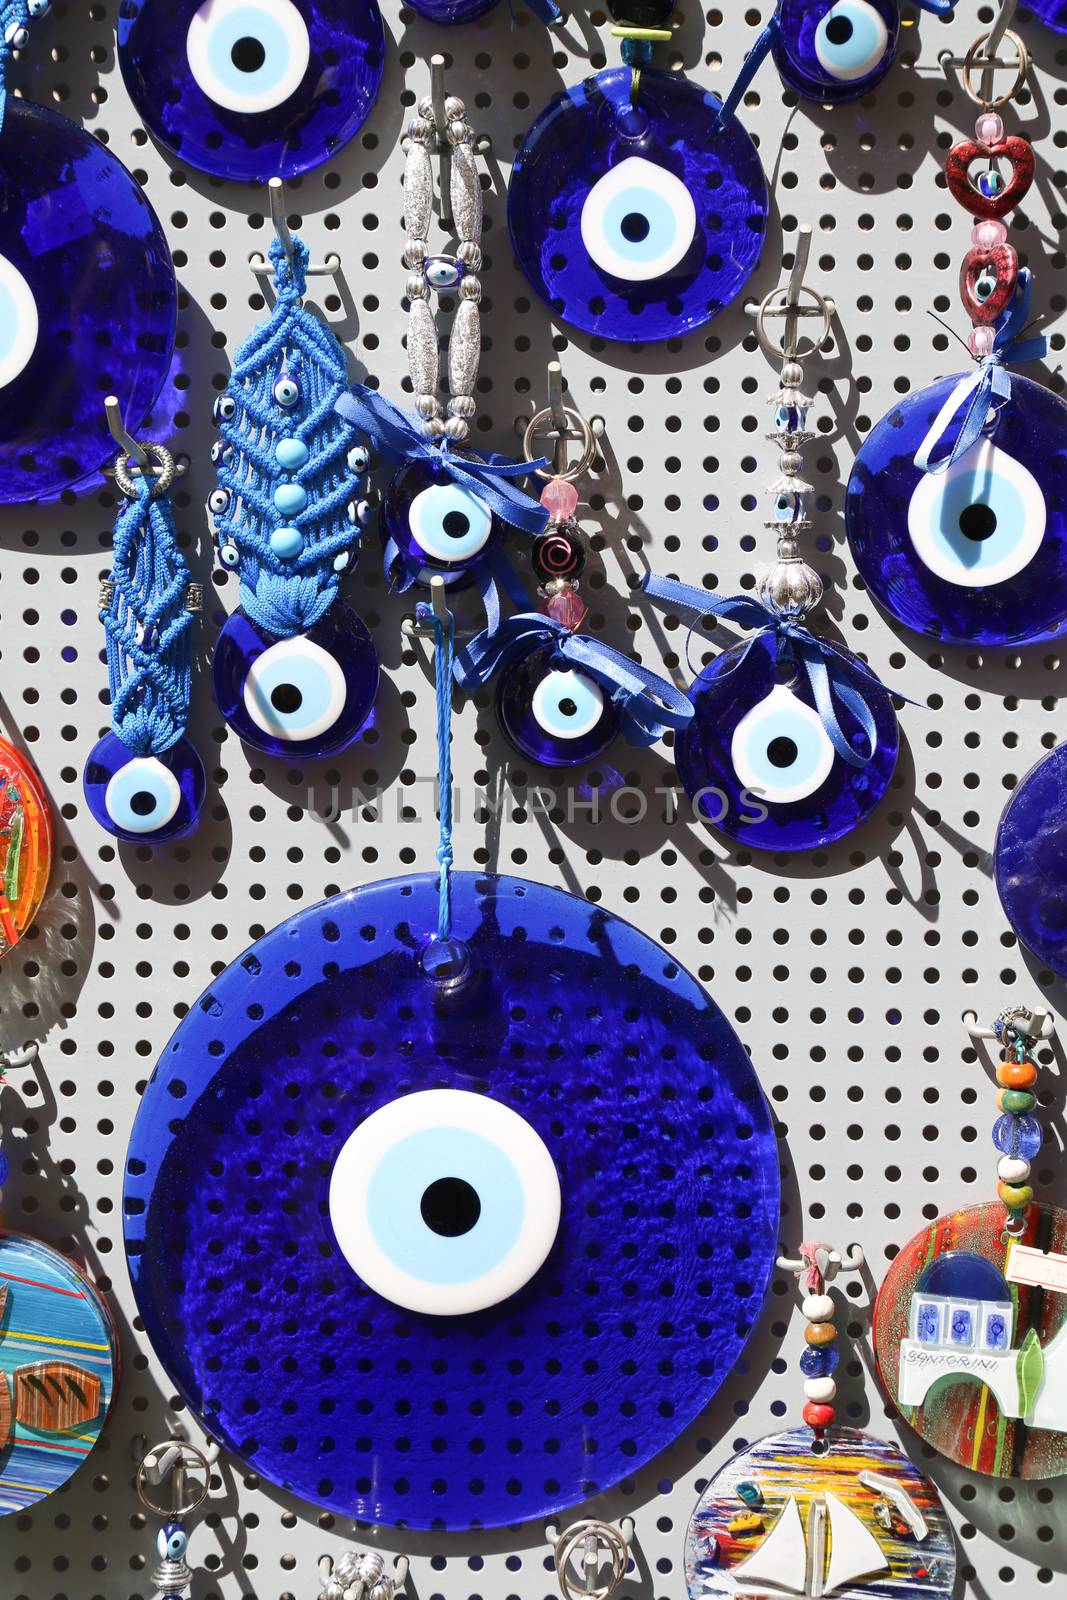 Blue Evil Eye souvenir sold in a Greek souvenir shop